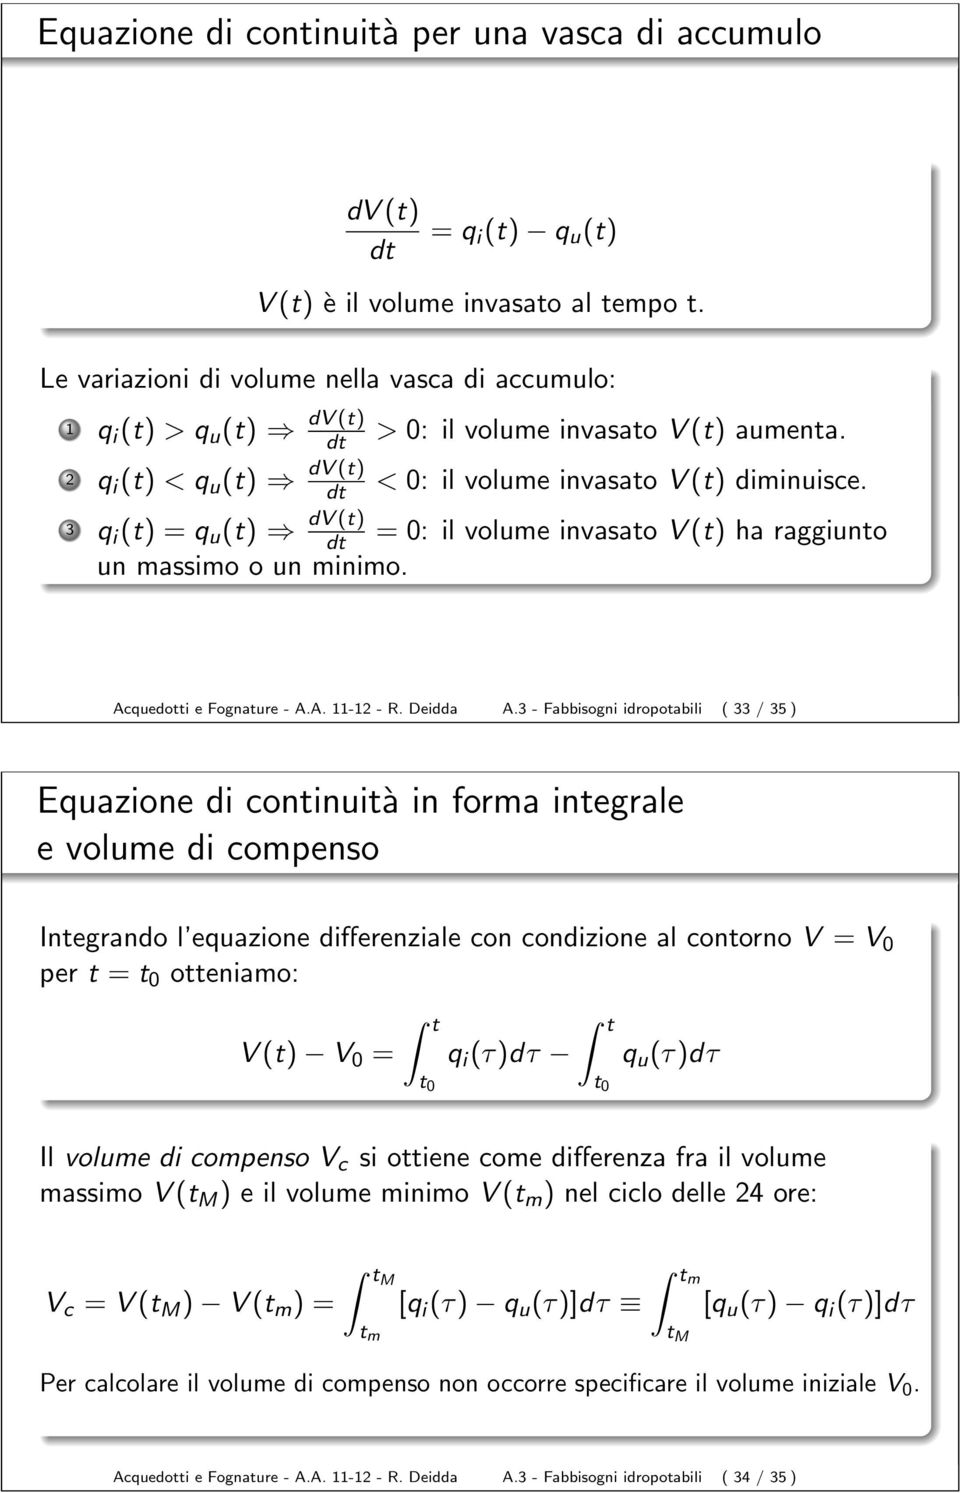 3 q i (t) = q u (t) = 0: il volume invasato V (t) ha raggiunto un massimo o un minimo. Acquedotti e Fognature - A.A. 11-12 - R. Deidda A.